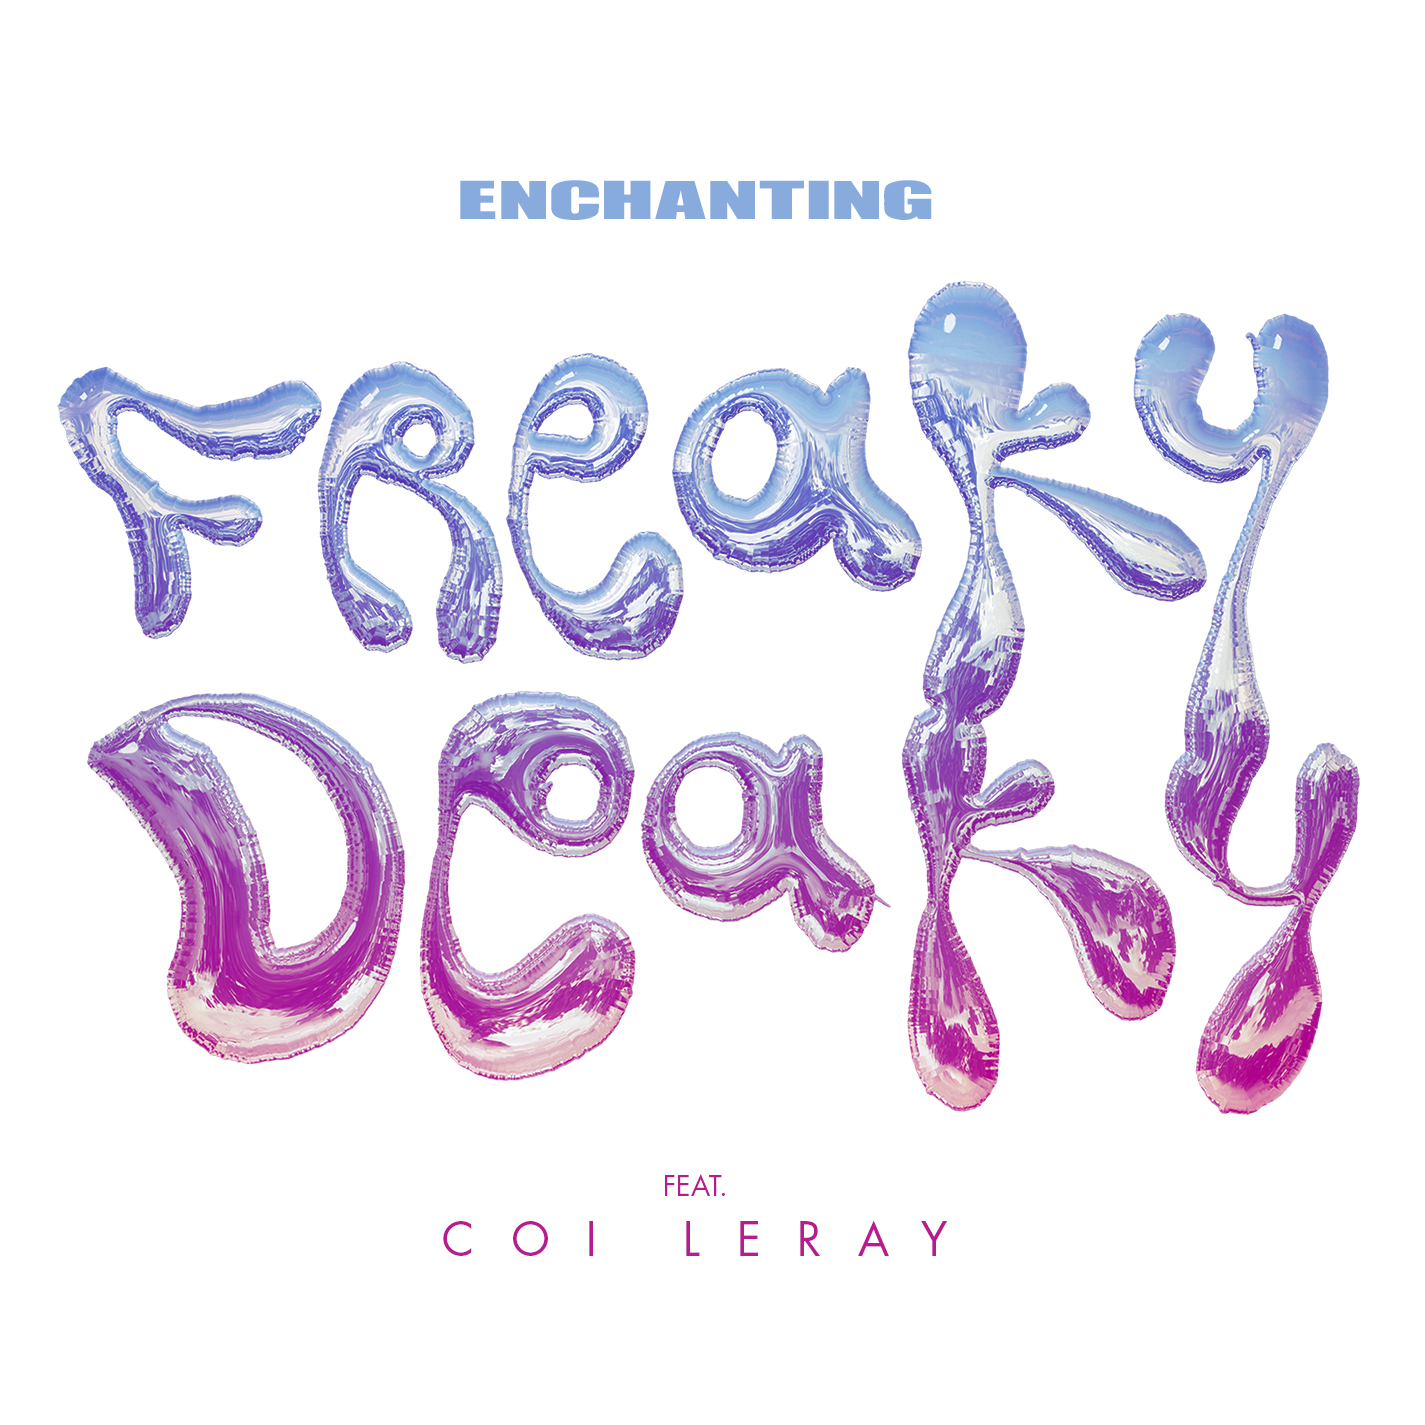 Freaky Deaky (feat. Coi Leray) album image